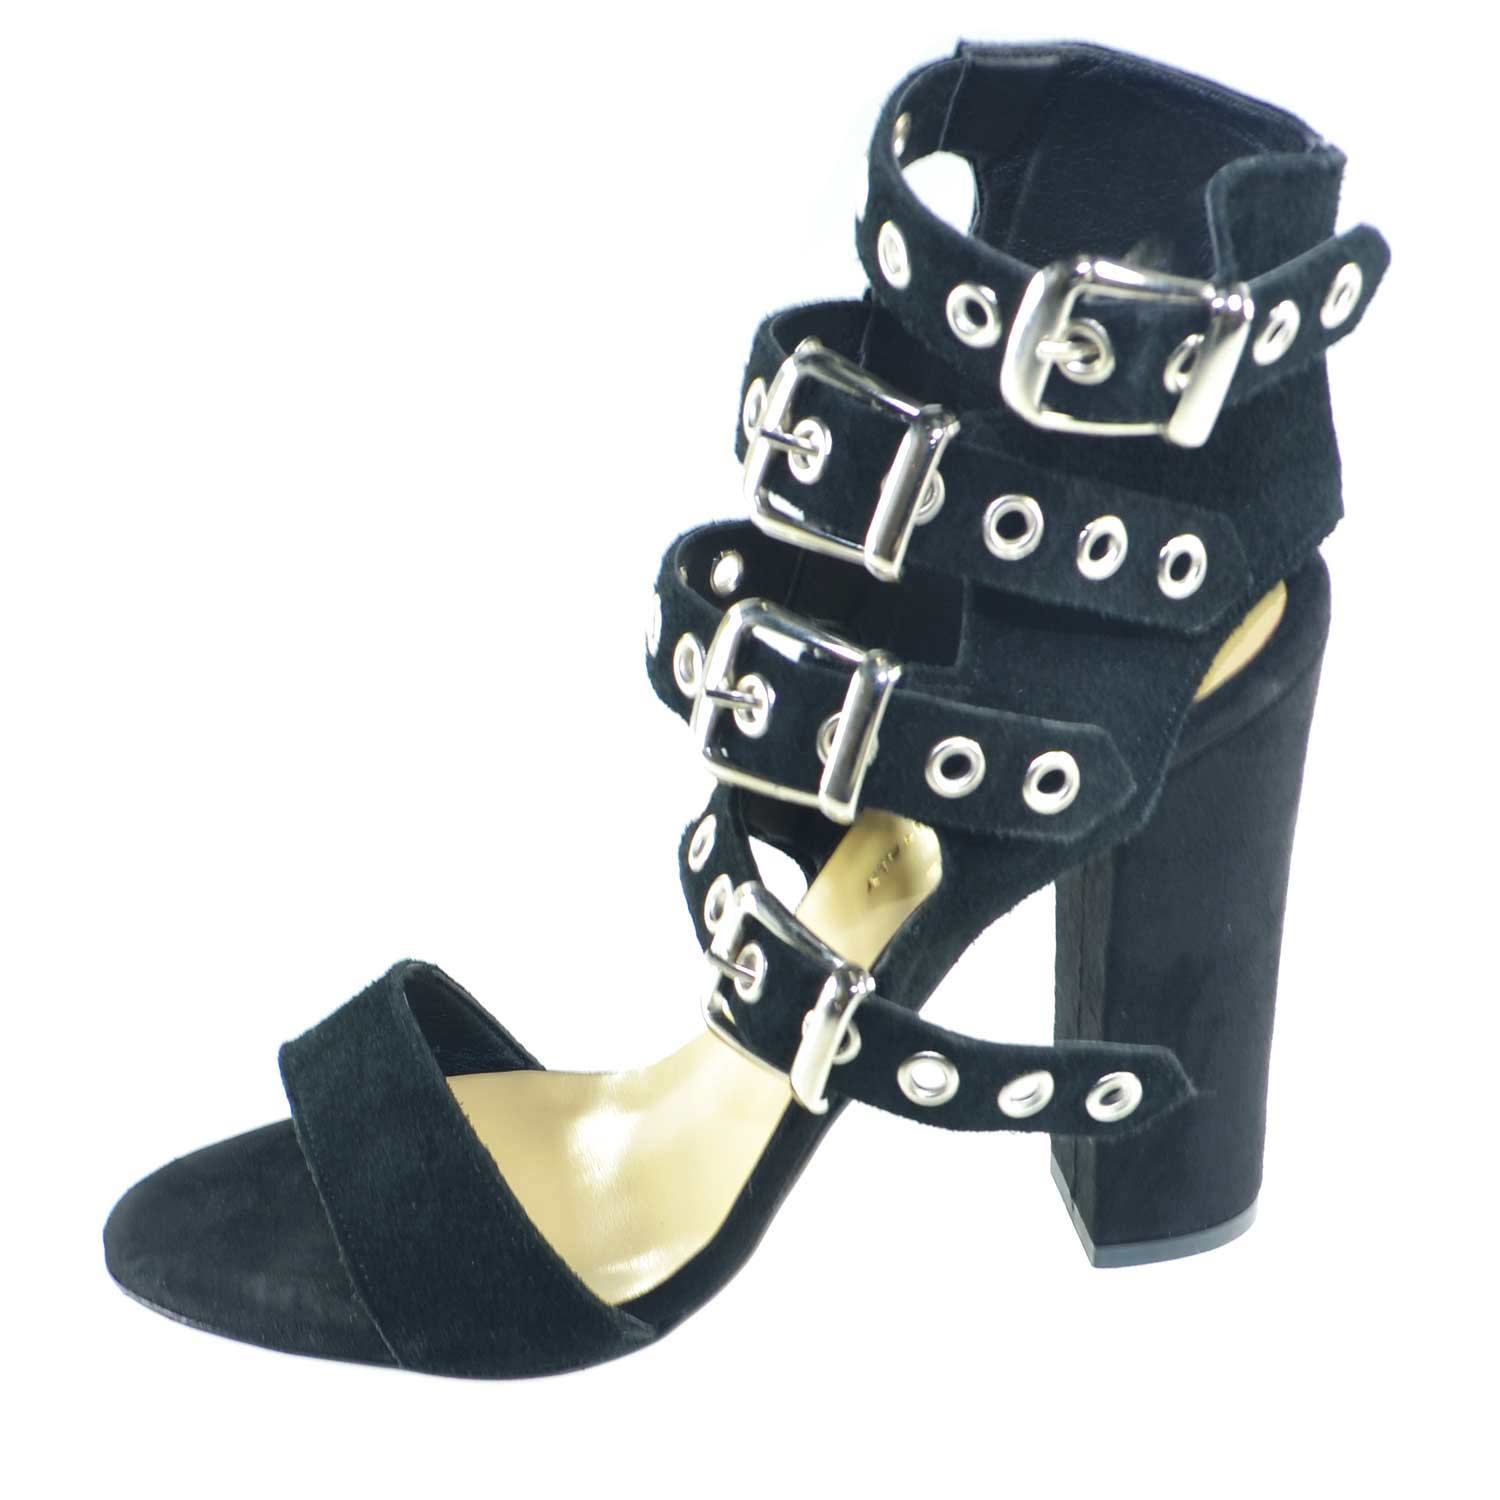 Sandali tacco doppio nero art.st9094 made in italy accessori fibbia argento camoscio moda comfort fondo antiscivolo.